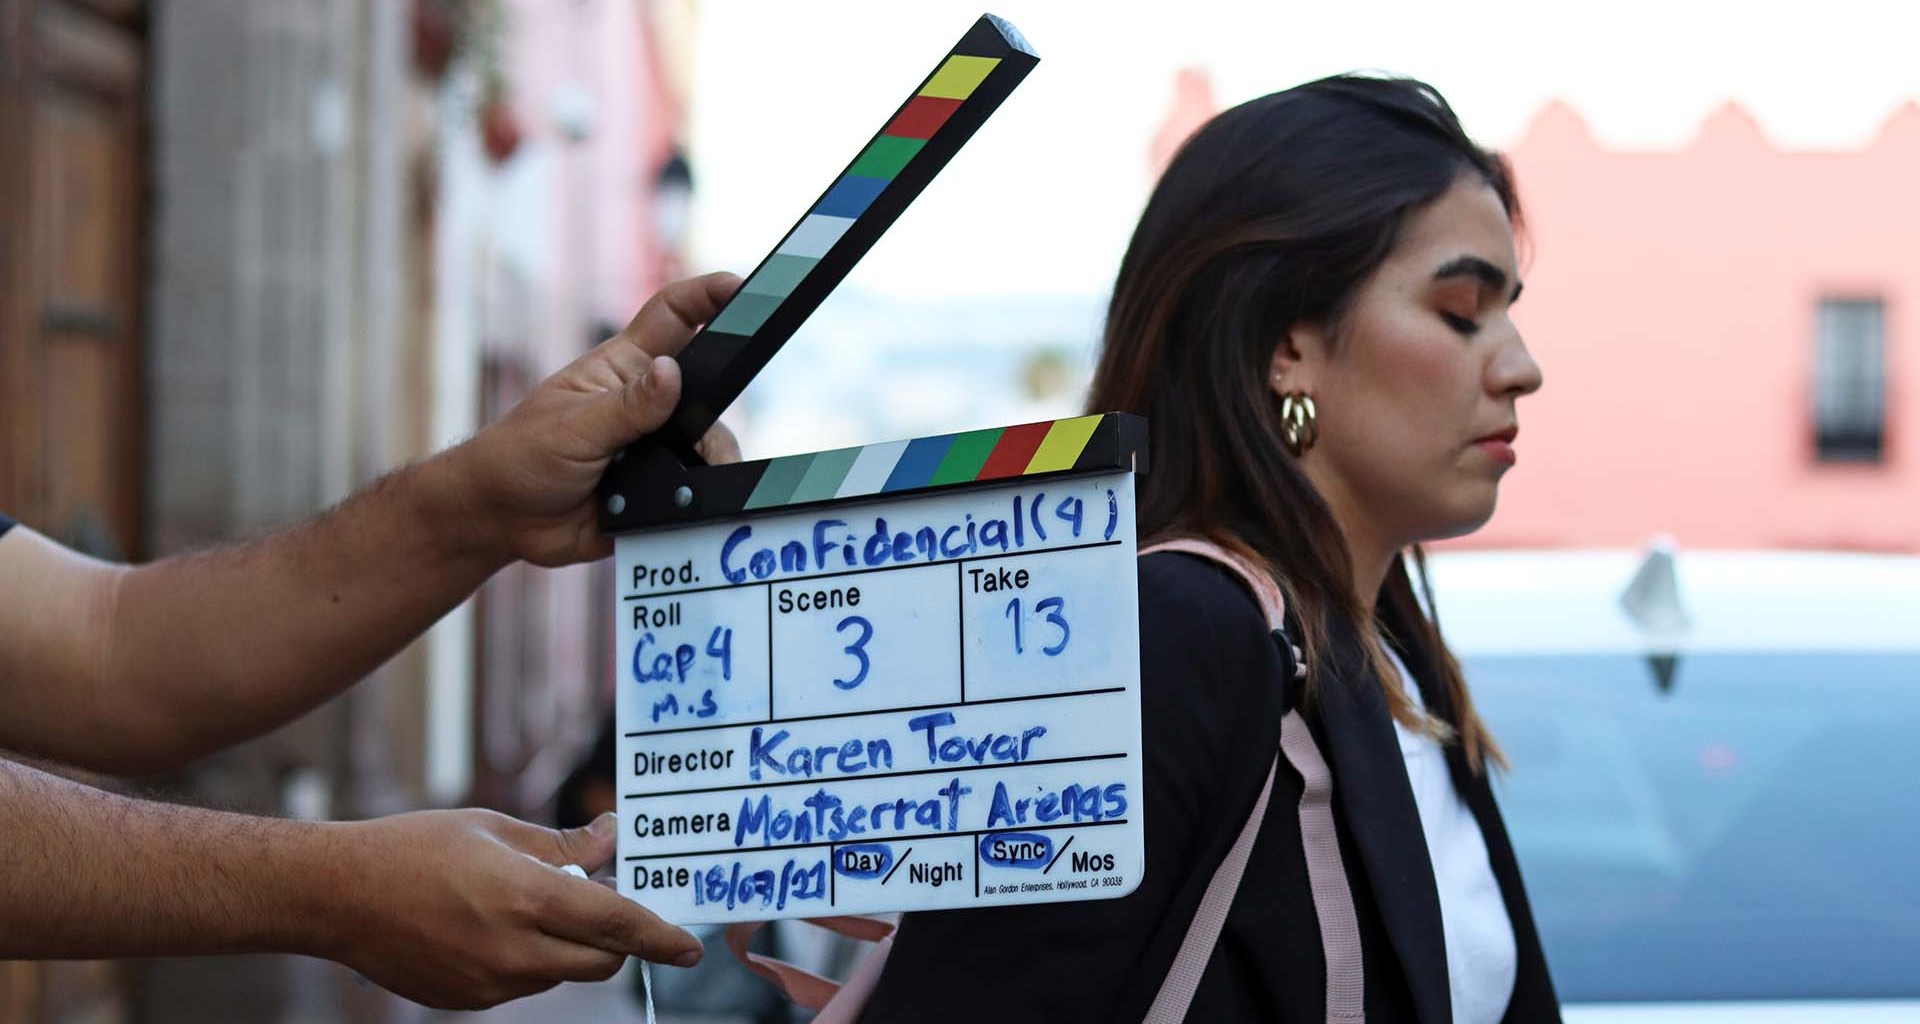 Estudiantes del Tec campus Querétaro culminan la producción de la miniserie “Confidencial” con un formato de carácter innovador.